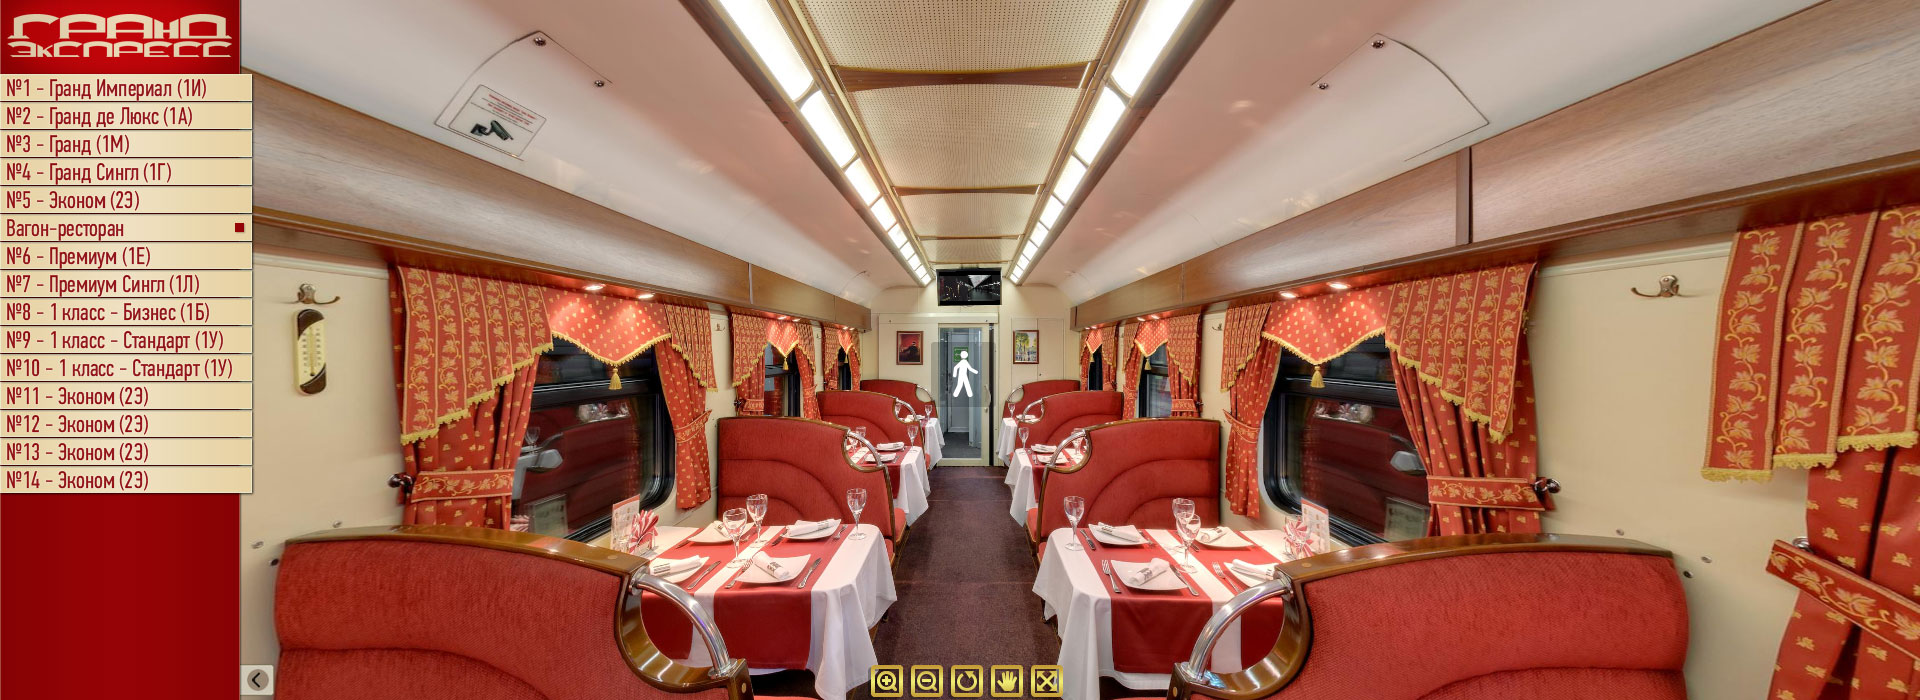 Виртуальный тур по поезду Гранд Экспресс